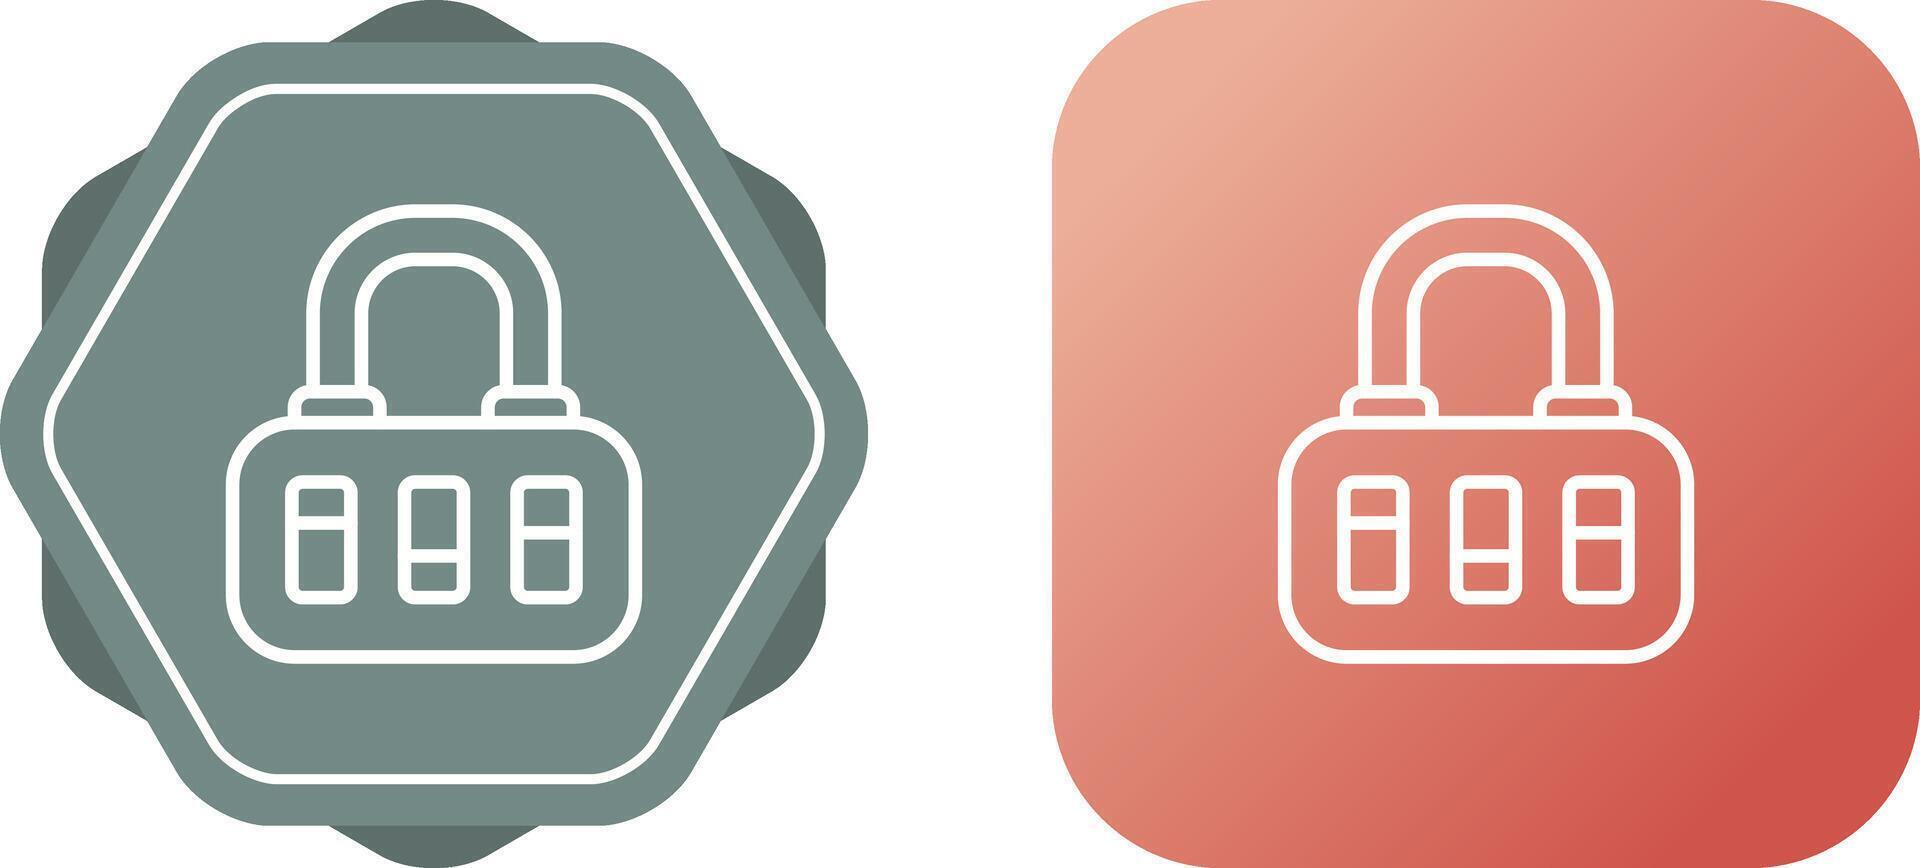 Security Lock Vector Icon